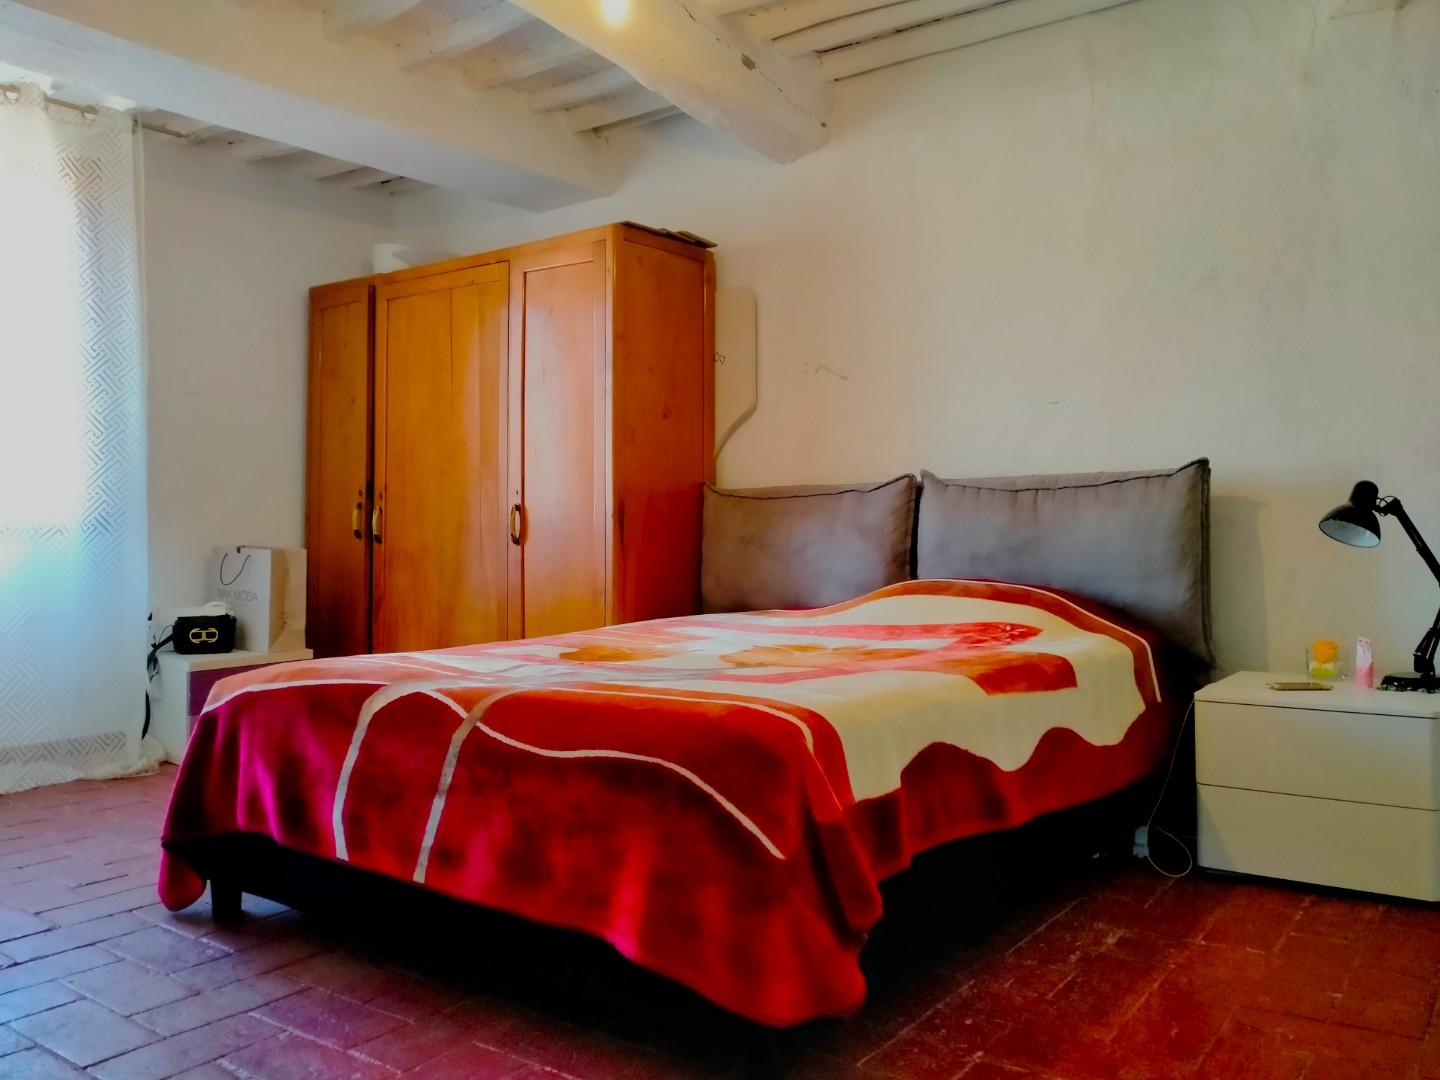 Porzione di casa in vendita - Orentano, Castelfranco di Sotto